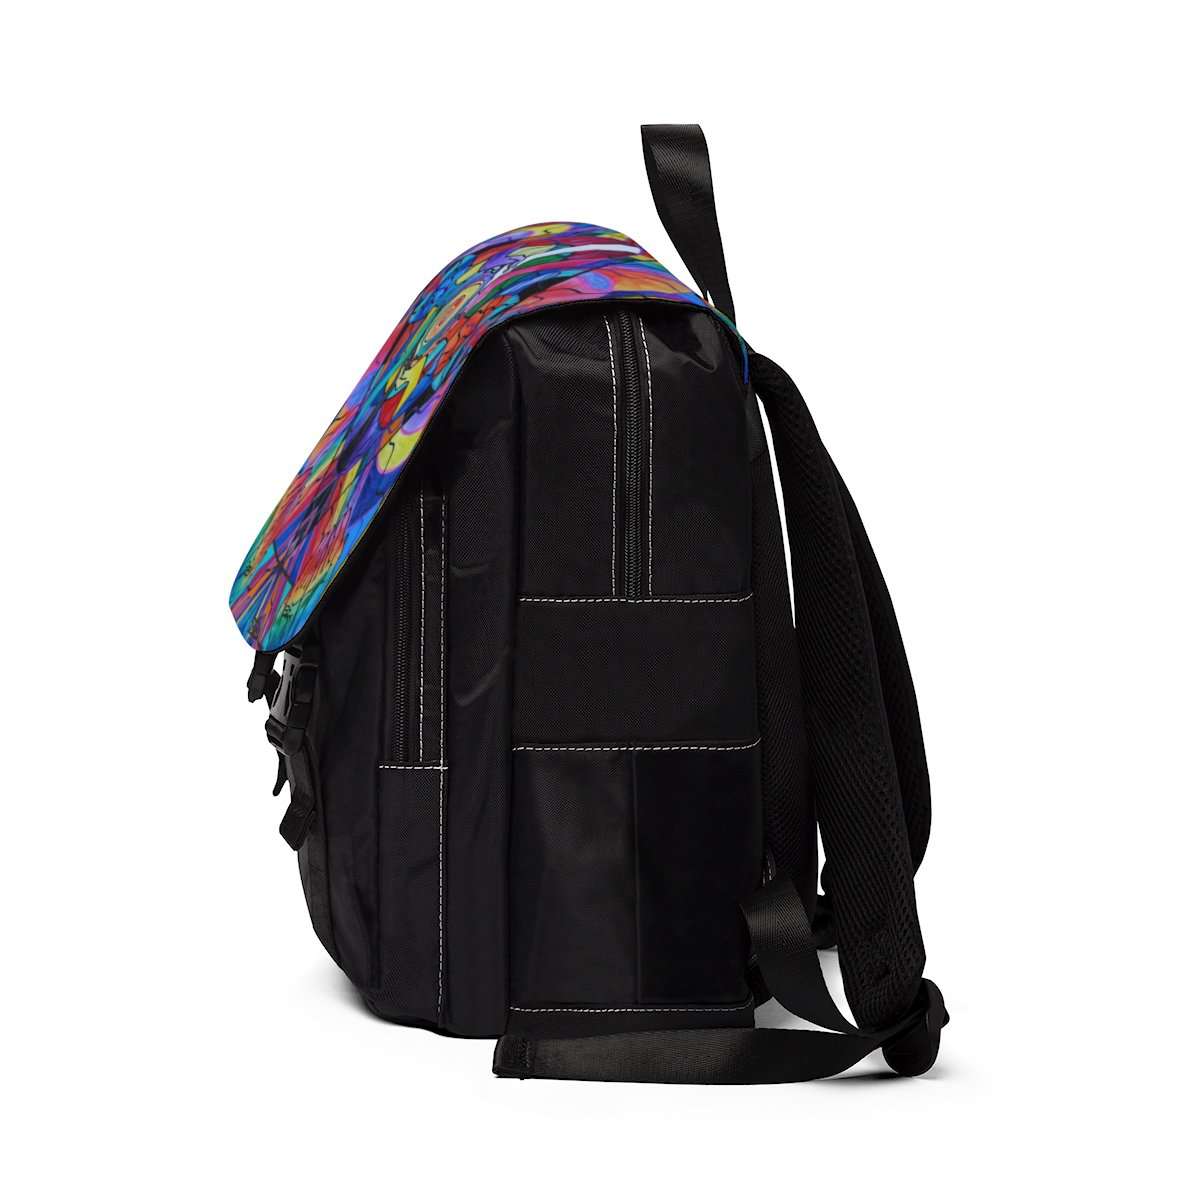 Come Together - Unisex Casual Shoulder Backpack